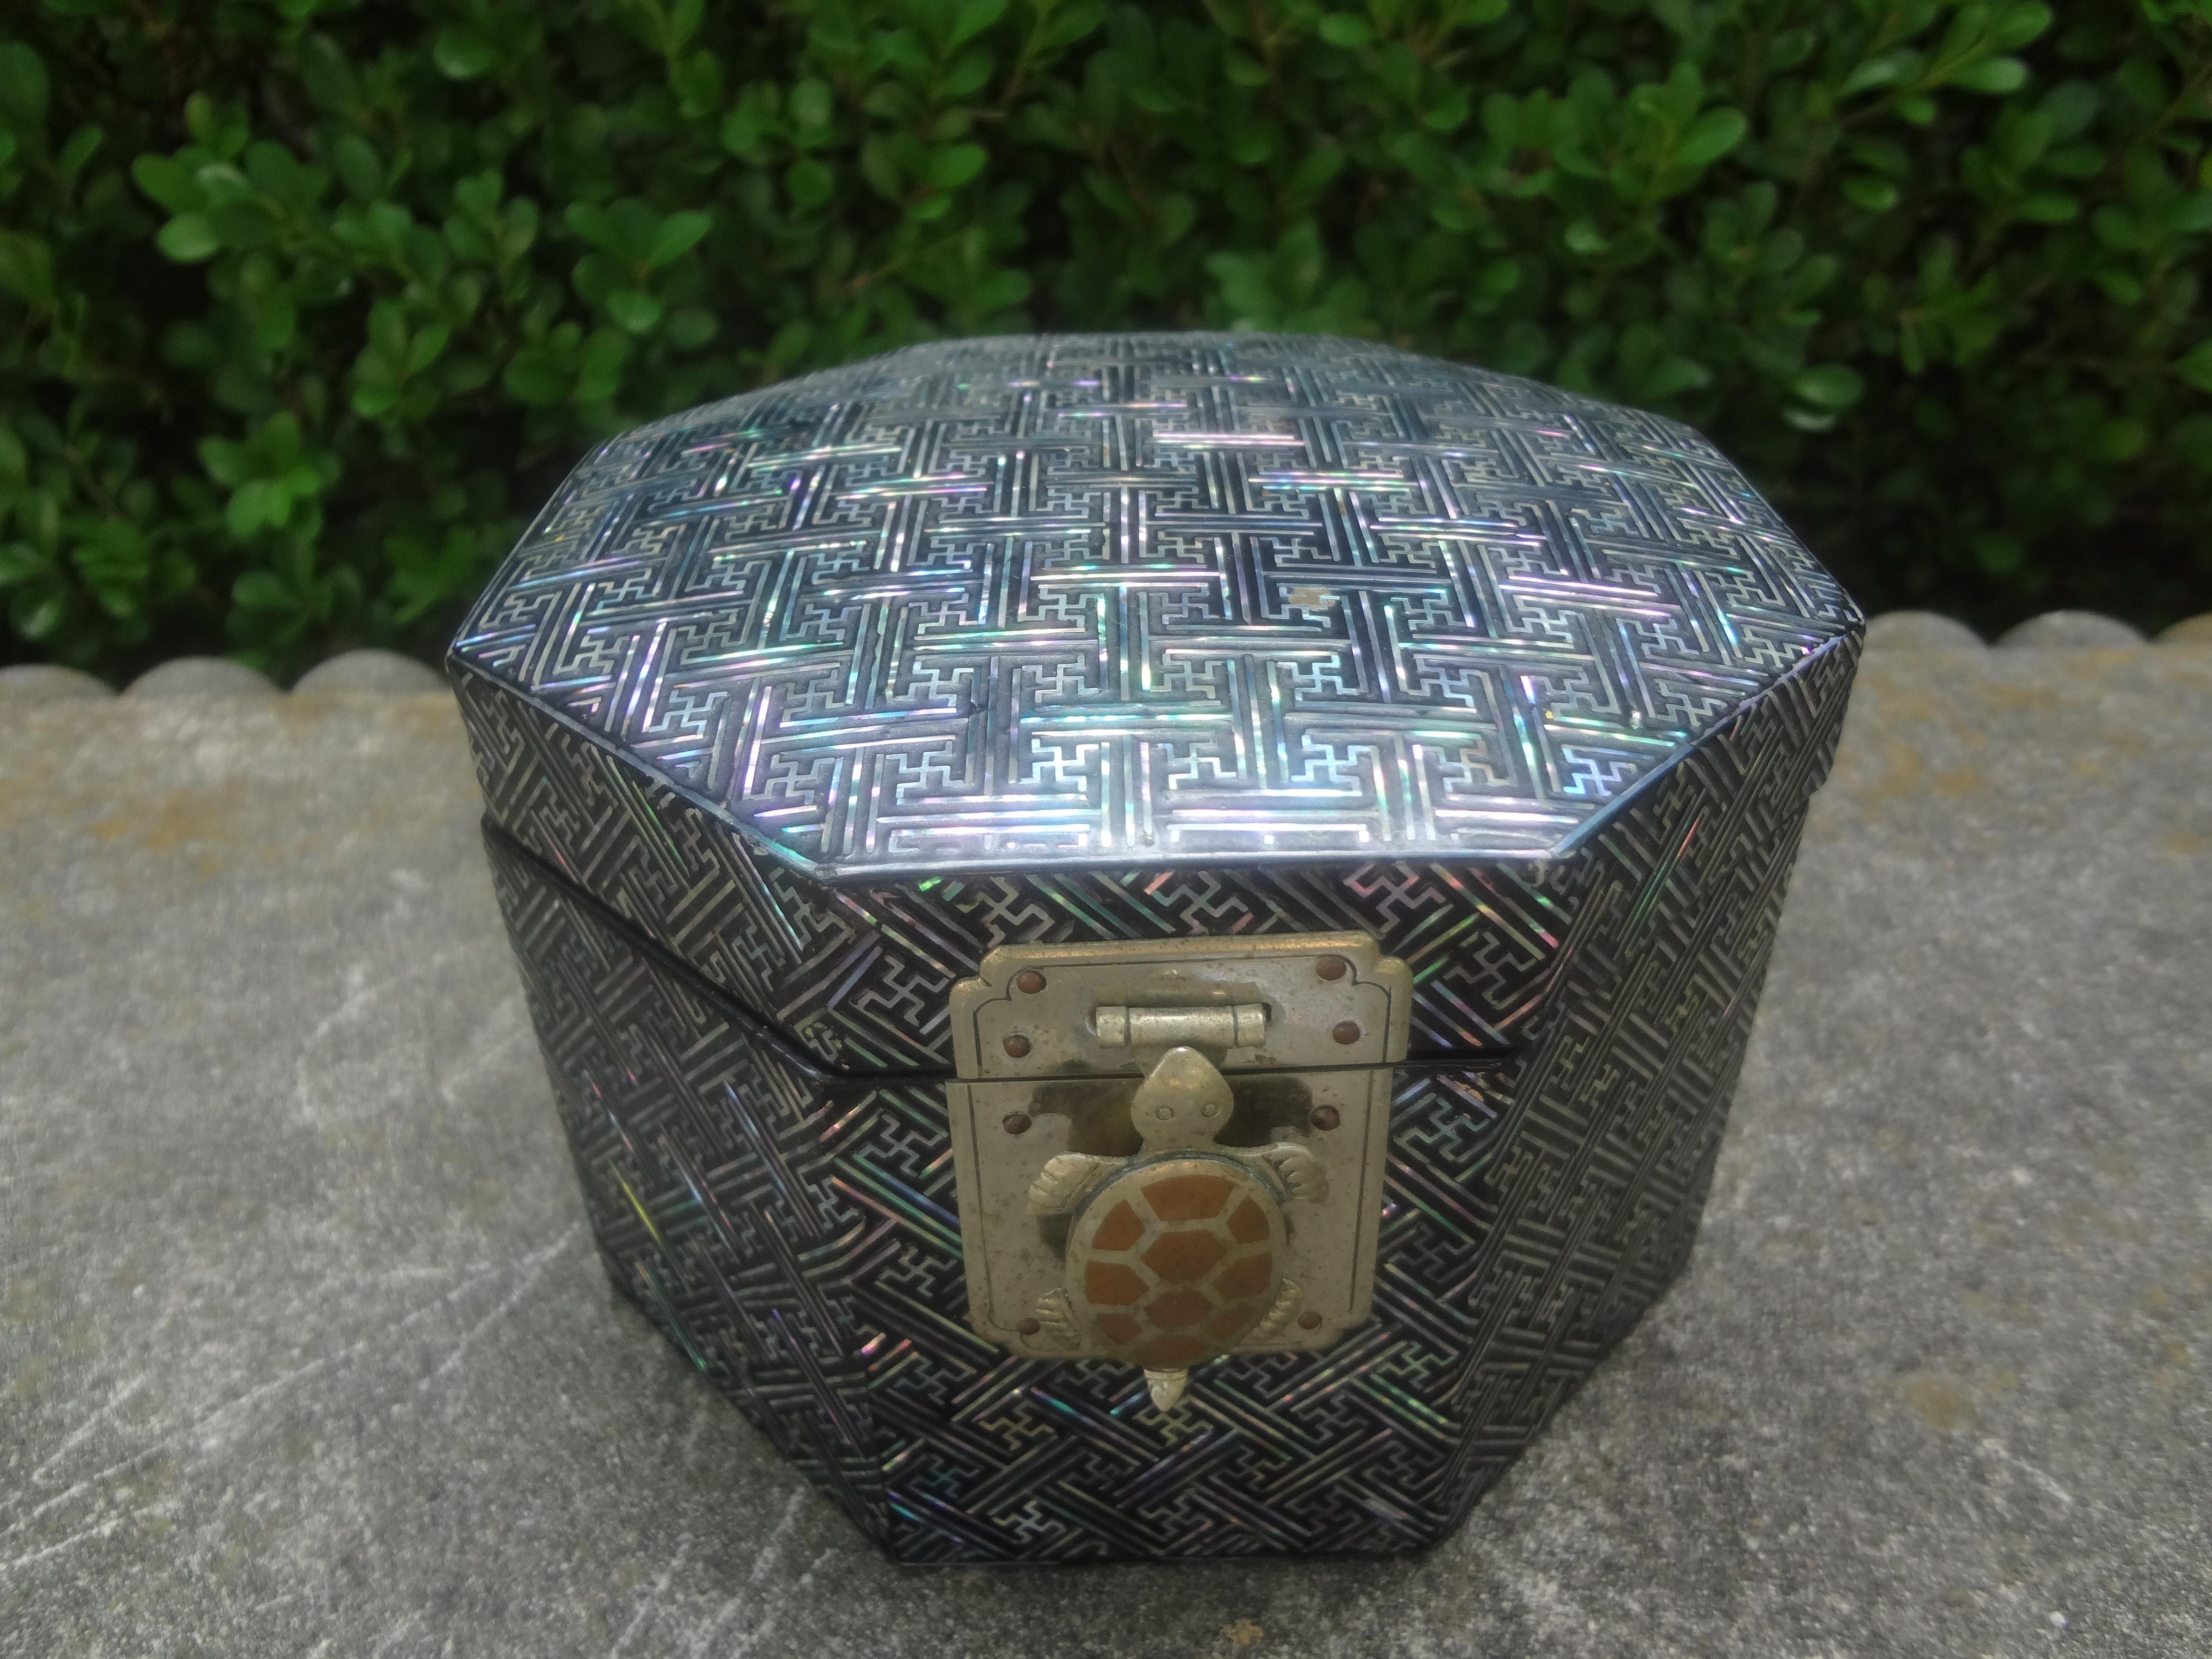 Vintage Asian Octagonal Lacquer Box With Turtle Closure.
Ravissante boîte en laque asiatique du 20e siècle avec un motif de clé grecque et une fermeture en métal en forme de tortue.
Cette magnifique boîte décorative est l'accessoire parfait pour la